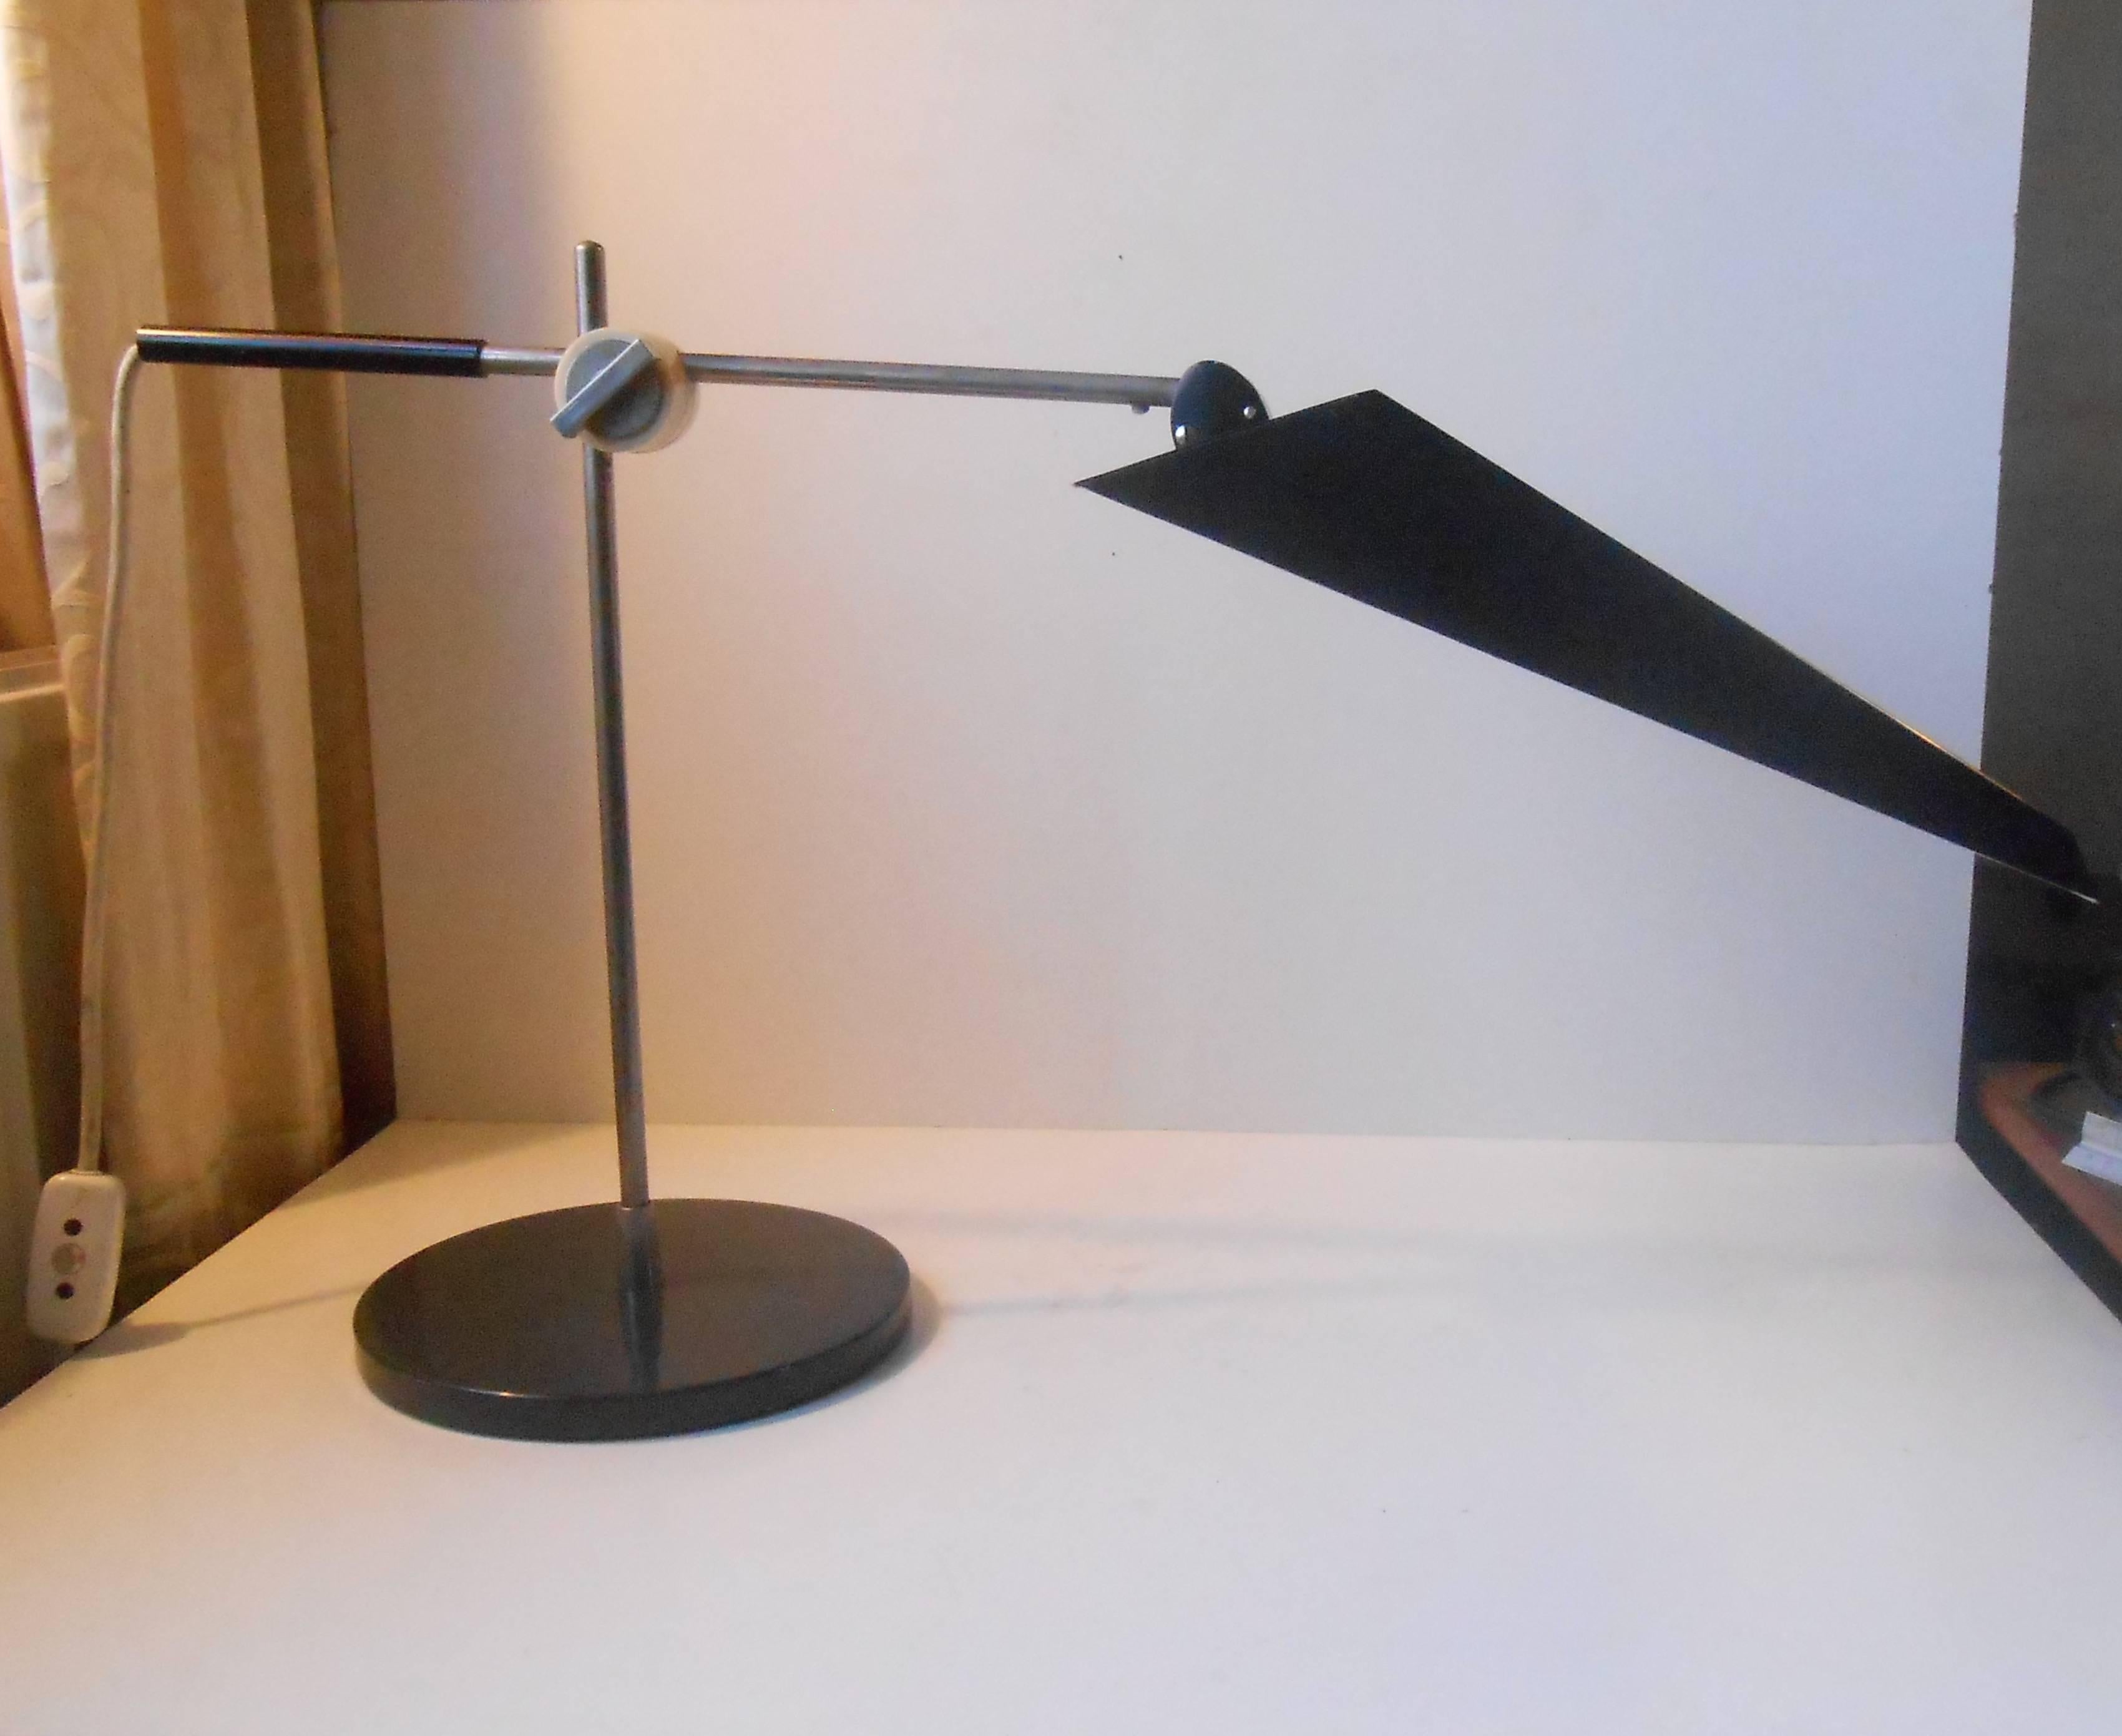 Große, voll verstellbare Schreibtischlampe mit Schirm, entworfen von Christian Dell in den späten 1940er Jahren. Zwei Glühbirnen mit je bis zu 40 Watt sorgen für ein optimales Arbeitslicht. Höhenverstellbar bis ca. 75 cm (30 Zoll). Abmessungen des